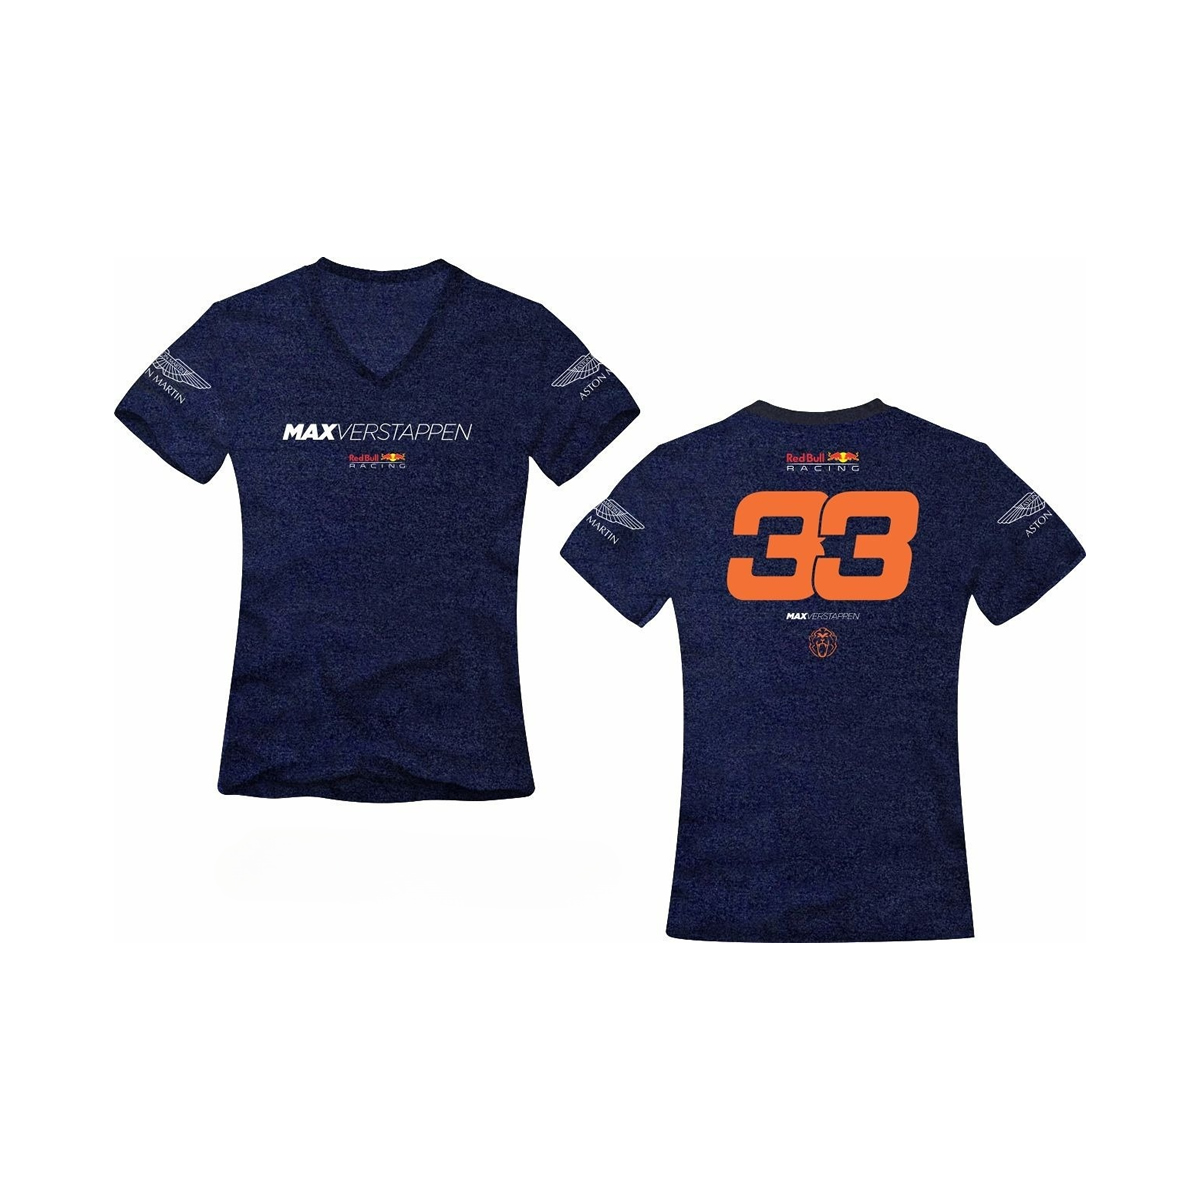 Camiseta Feminina All Boy Max Verstappen 33 - Foto 0